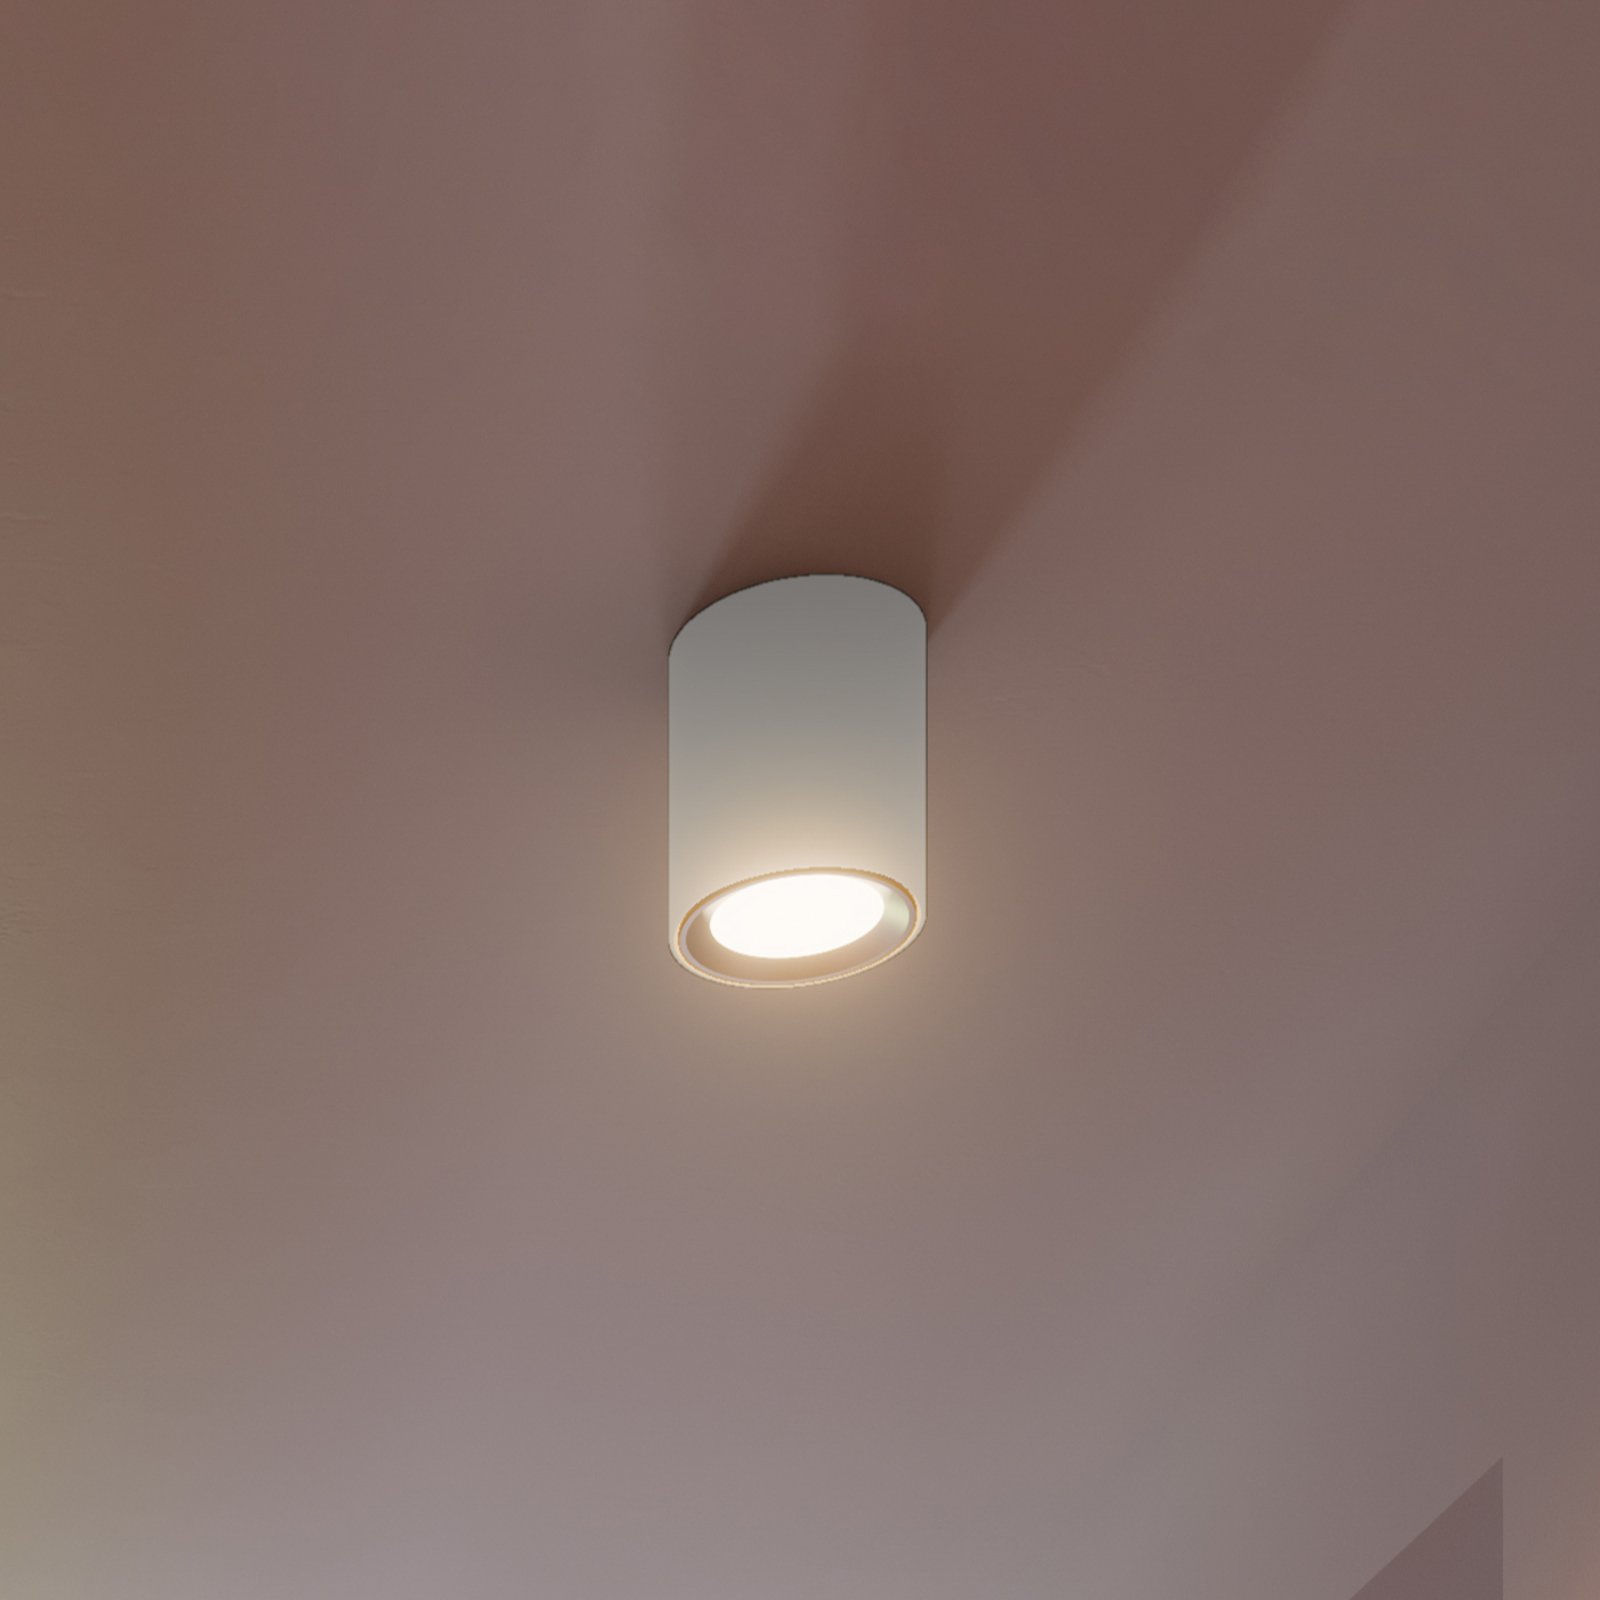 LED stropní bodovka Landon Smart bílá, výška 14 cm